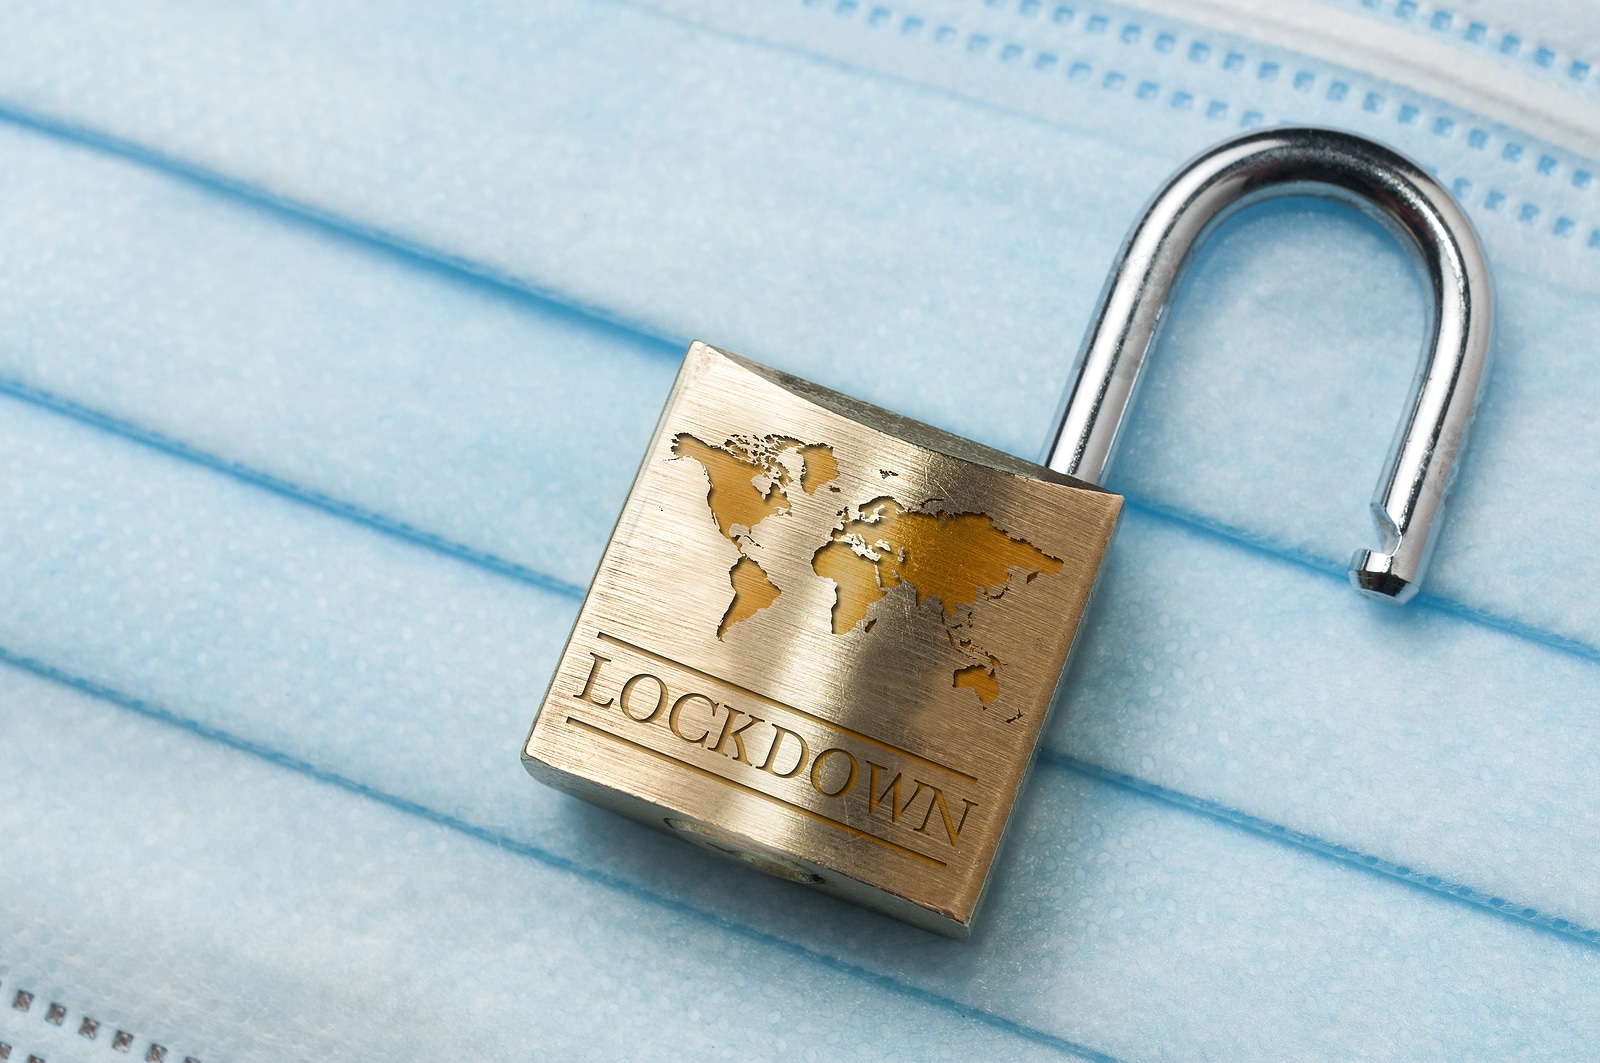 Lockdown written on a padlock